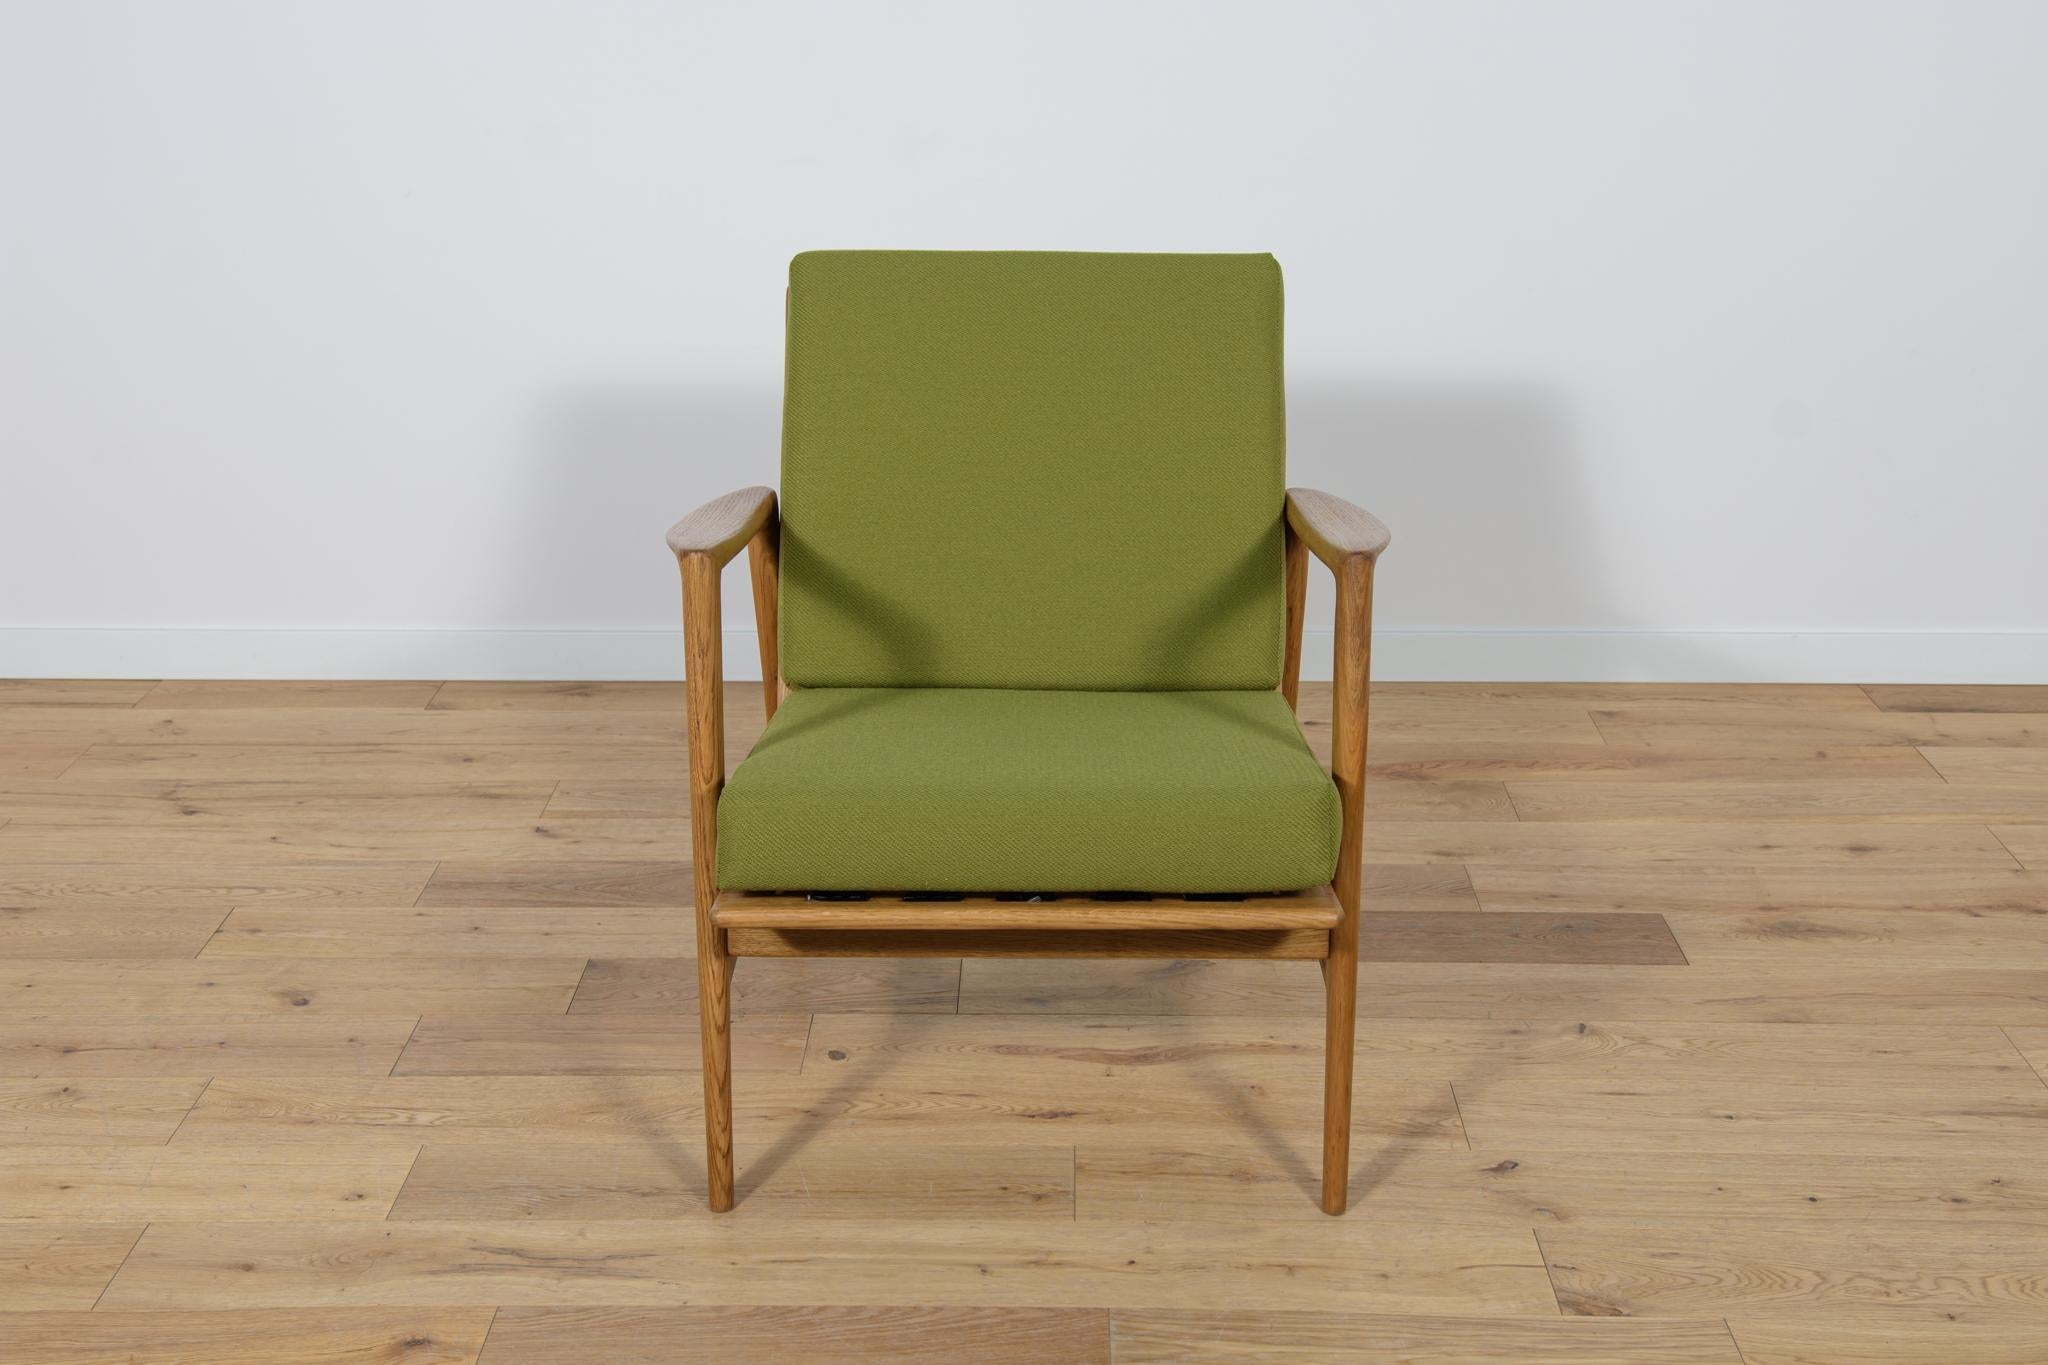 Der Sessel wurde in den 60er Jahren von der polnischen Firma Swarzędzka Furniture Factory hergestellt. Der Sessel hat neue Kissen, neu gepolstert in einer Qualität  grauer Stoff. Der Buchenrahmen wurde von der alten Oberfläche gereinigt, mit einer